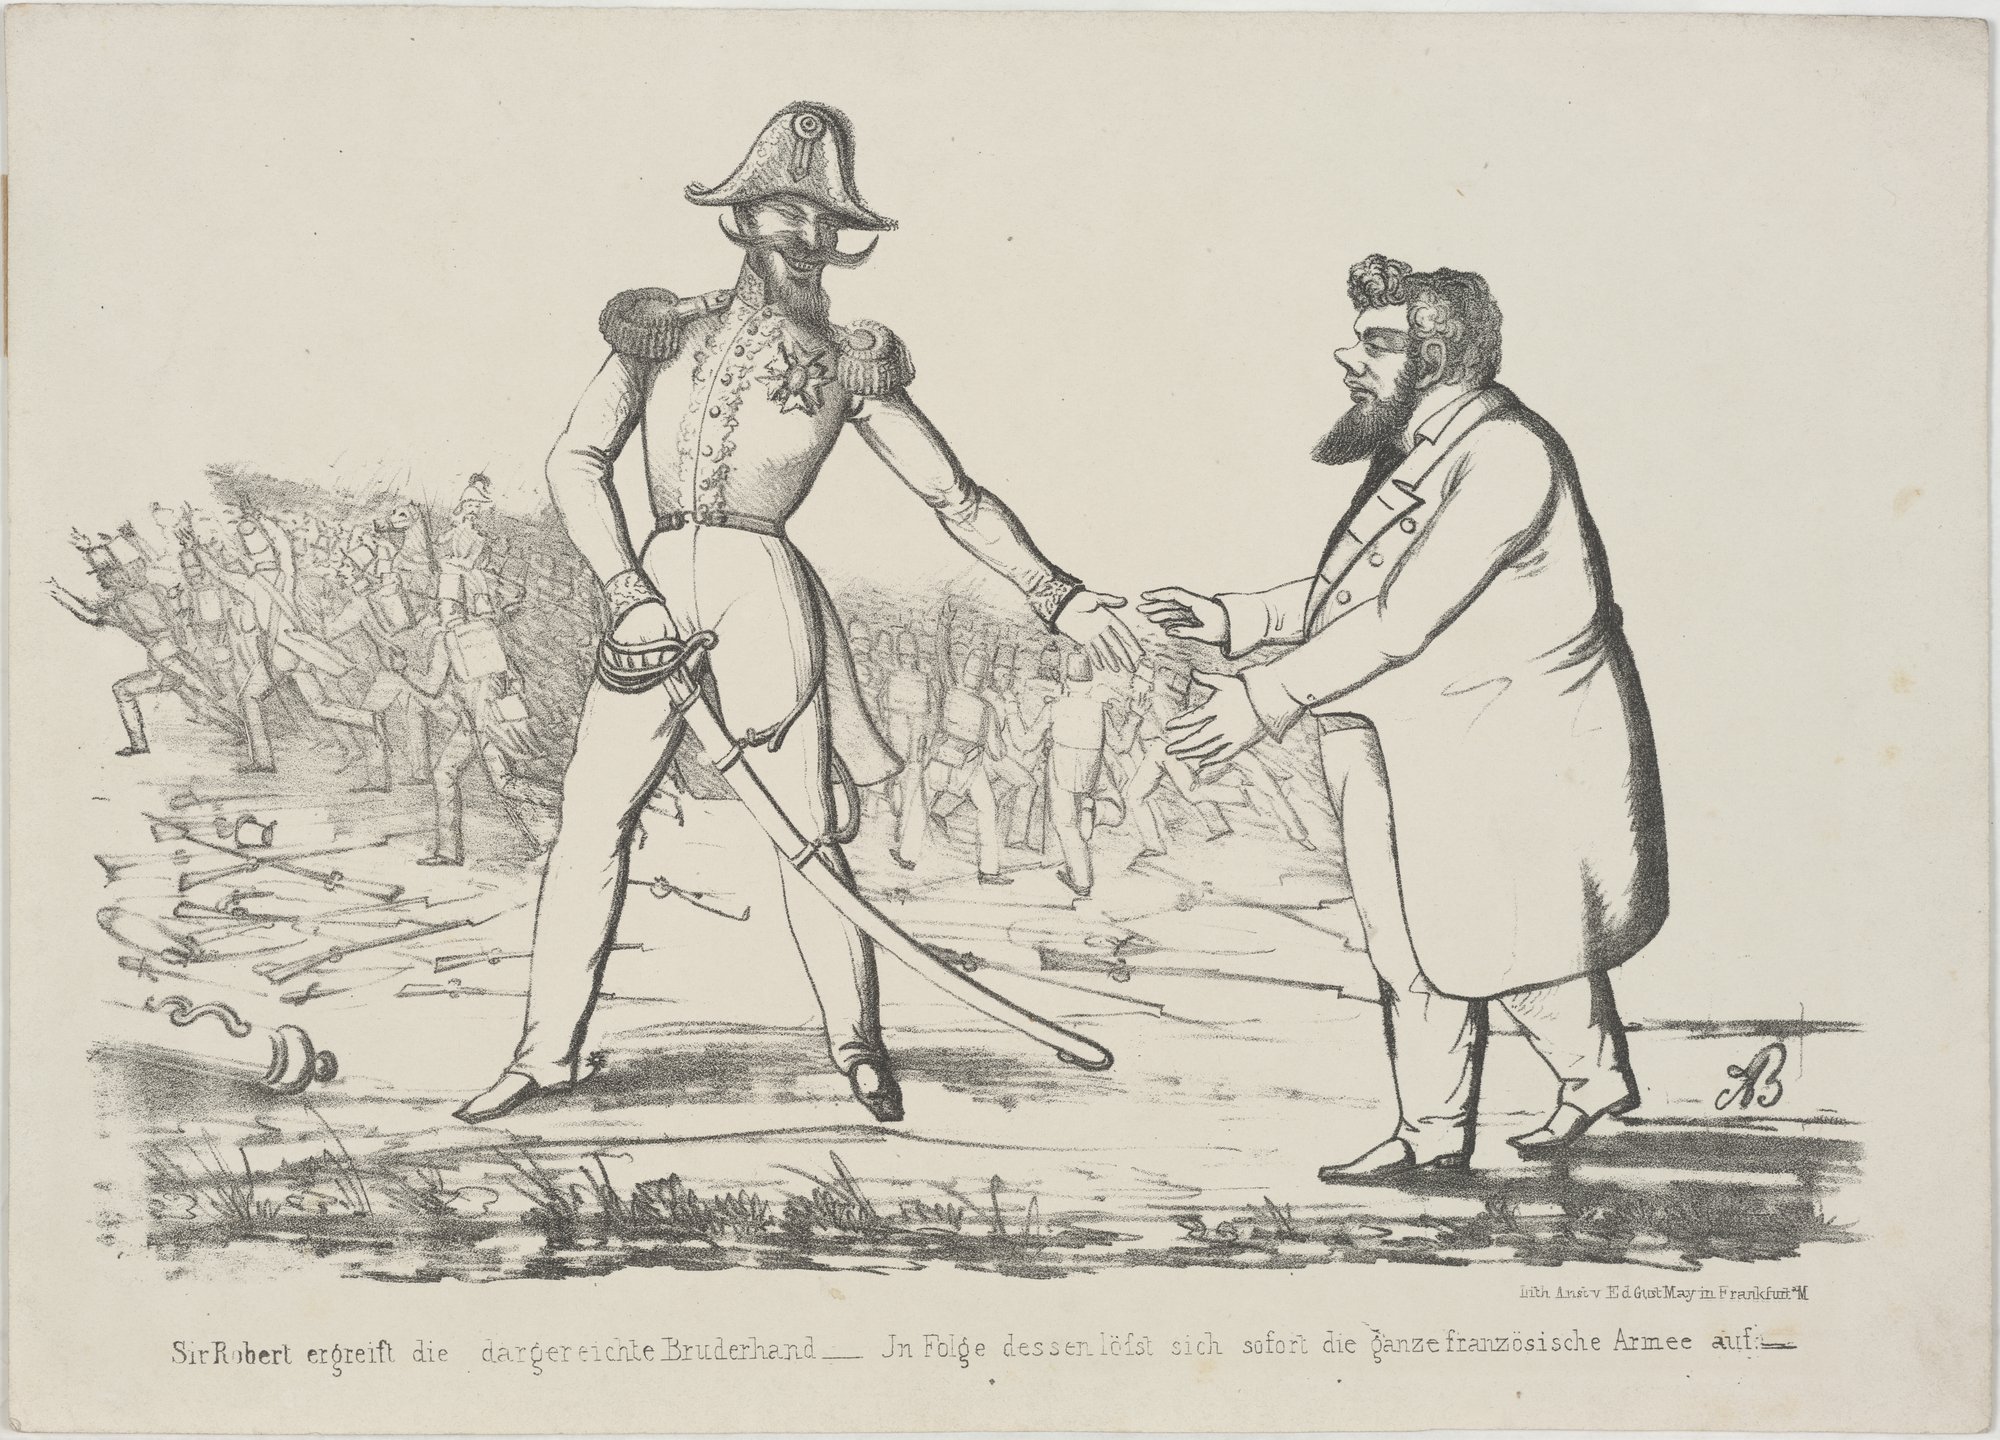 Sir Robert ergreift die dargereichte Bruderhand - In Folge dessen löst sich sofort die ganze französische Armee auf. (Kulturstiftung Sachsen-Anhalt Public Domain Mark)